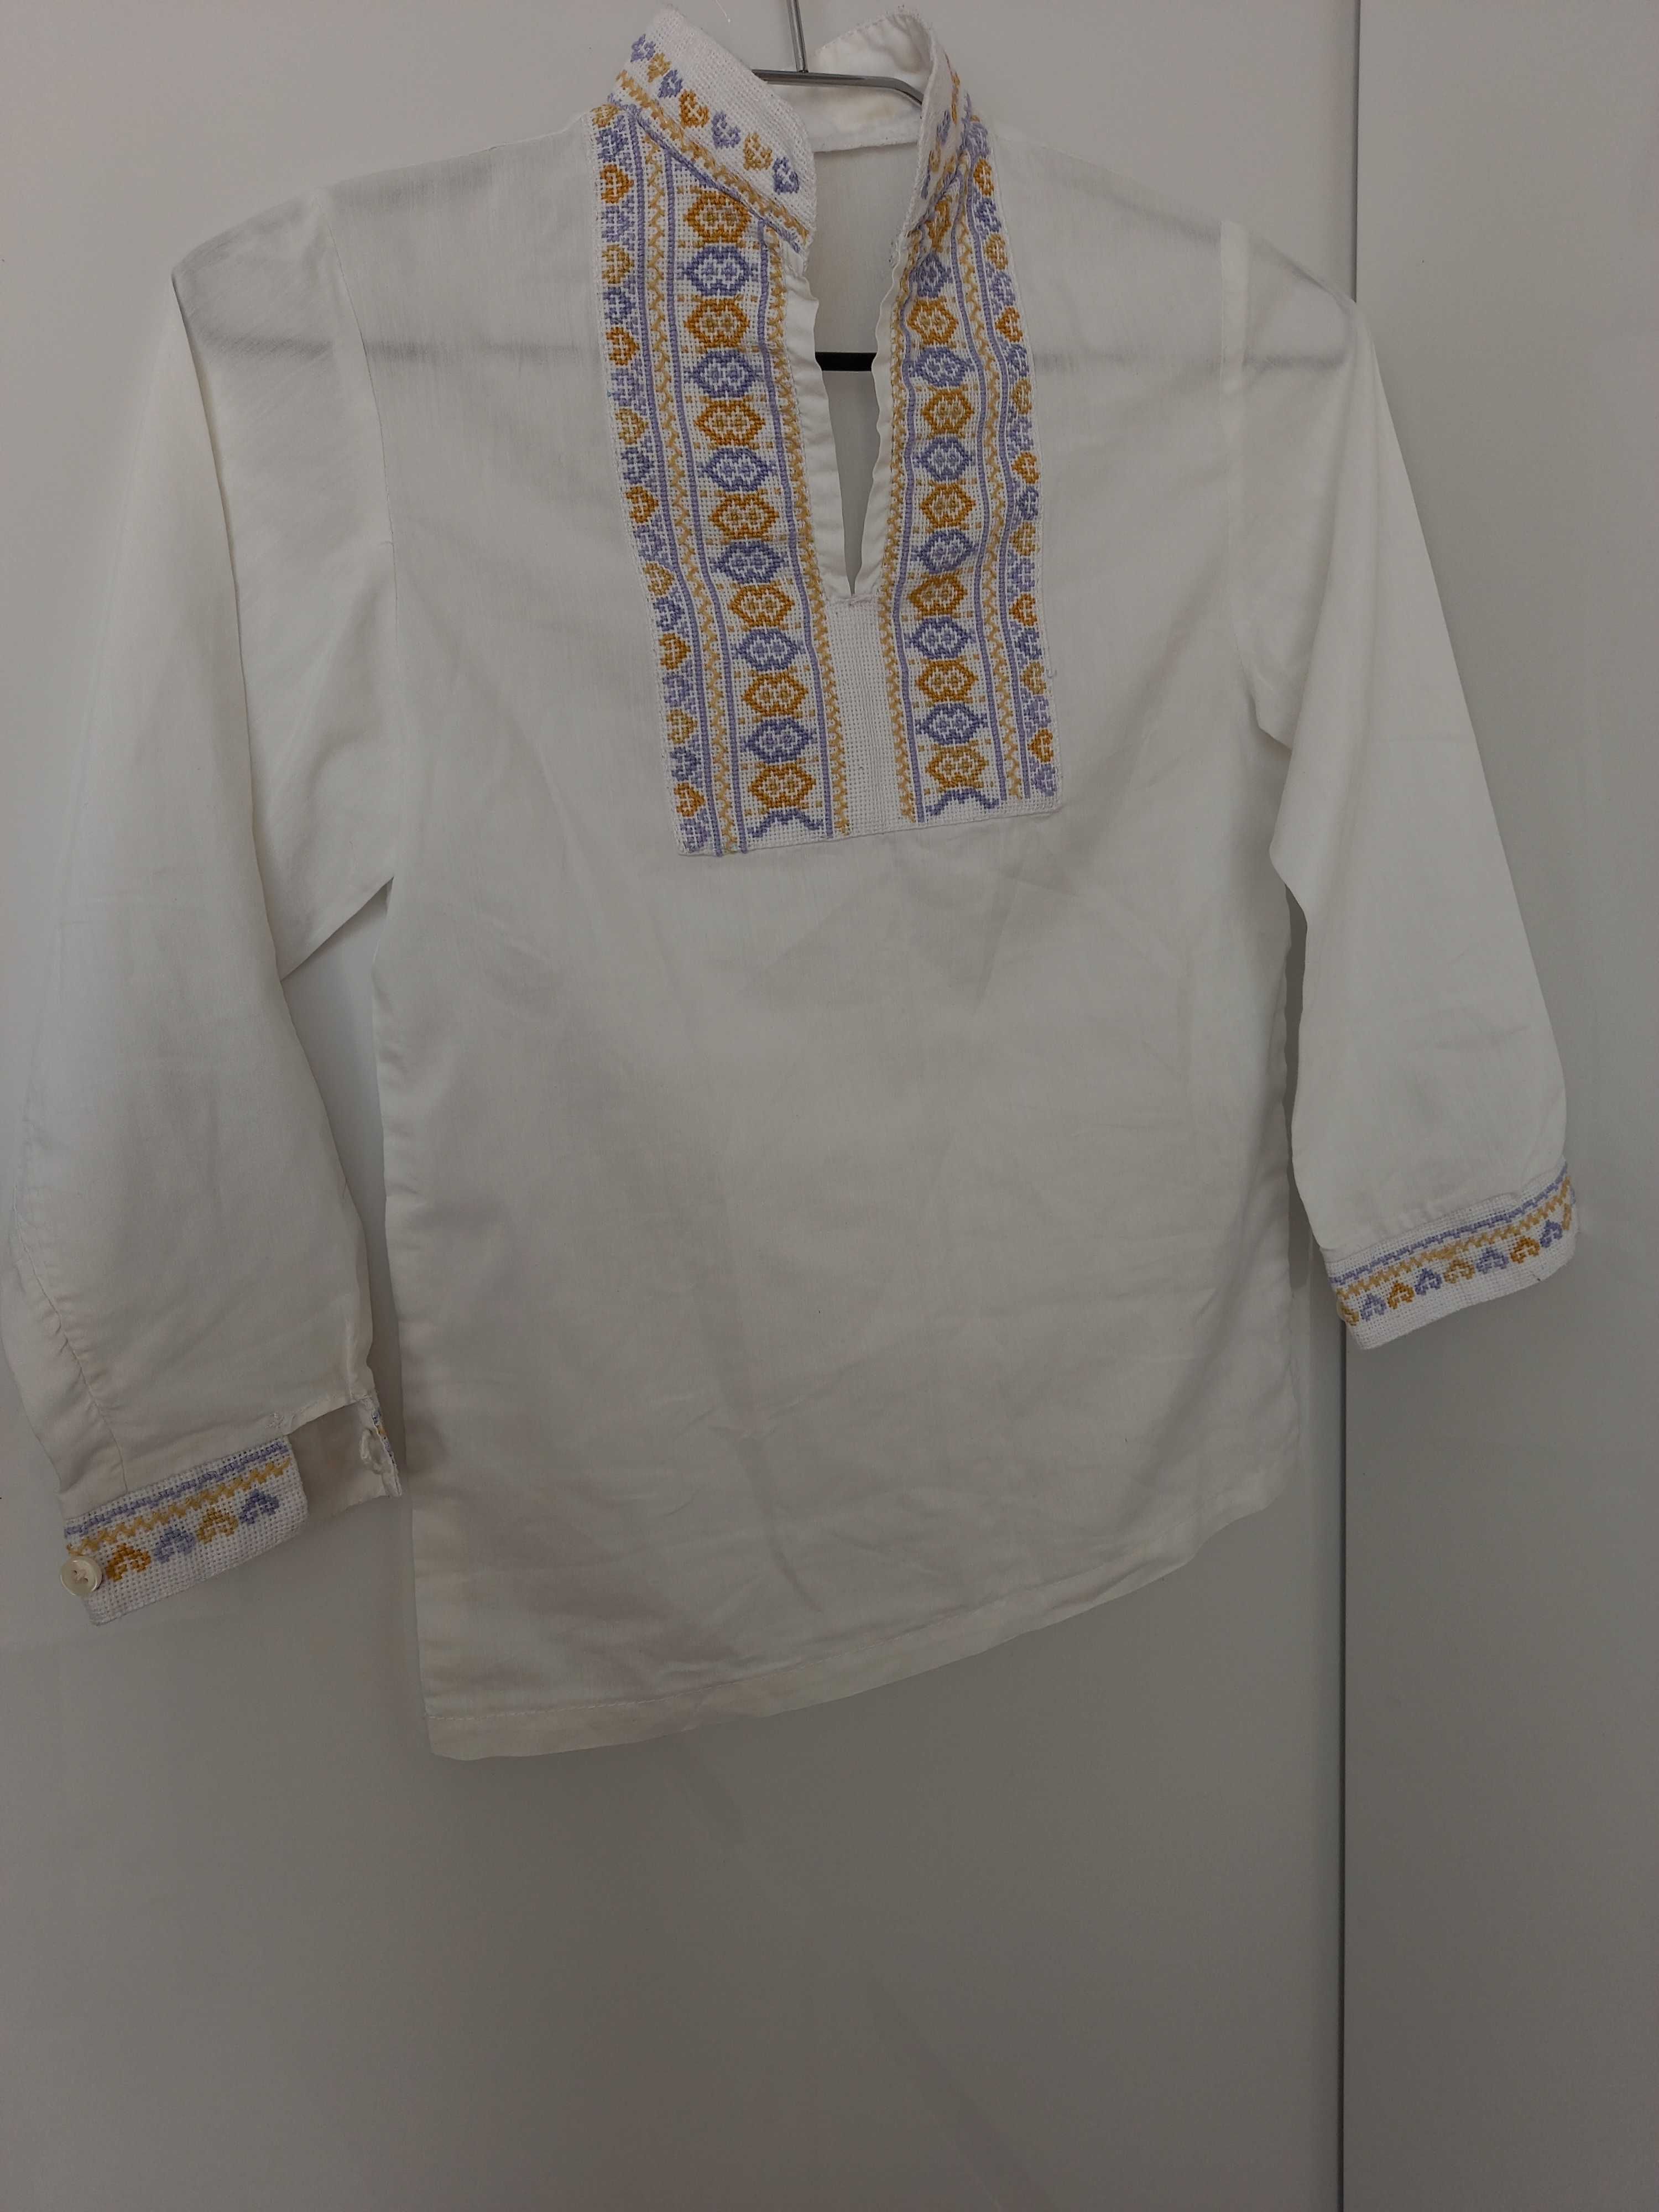 р. 128 - 134 украинская вышиванка рубашка ручная вышивка хлопок